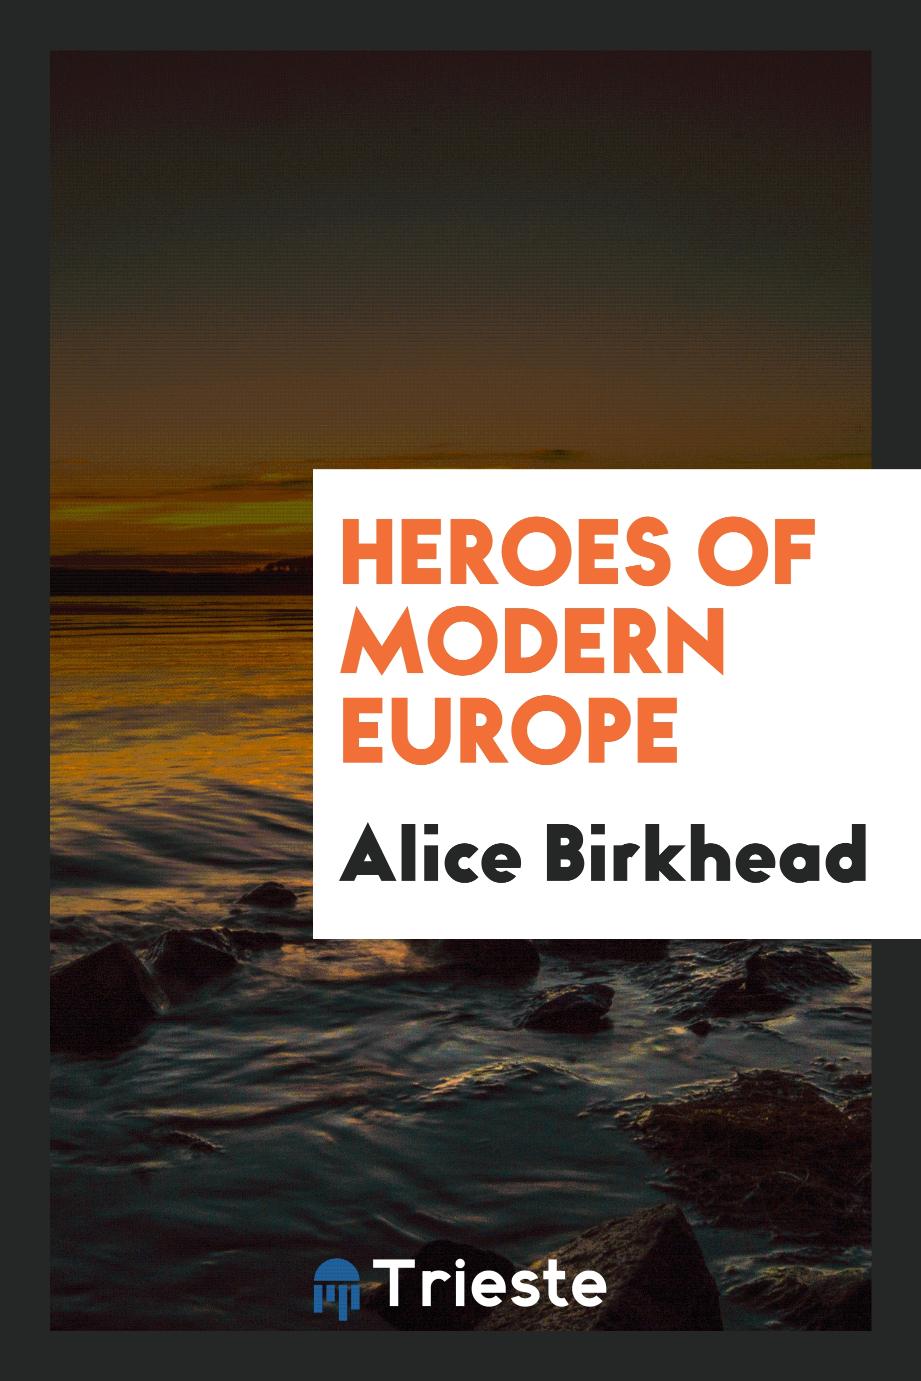 Heroes of modern Europe